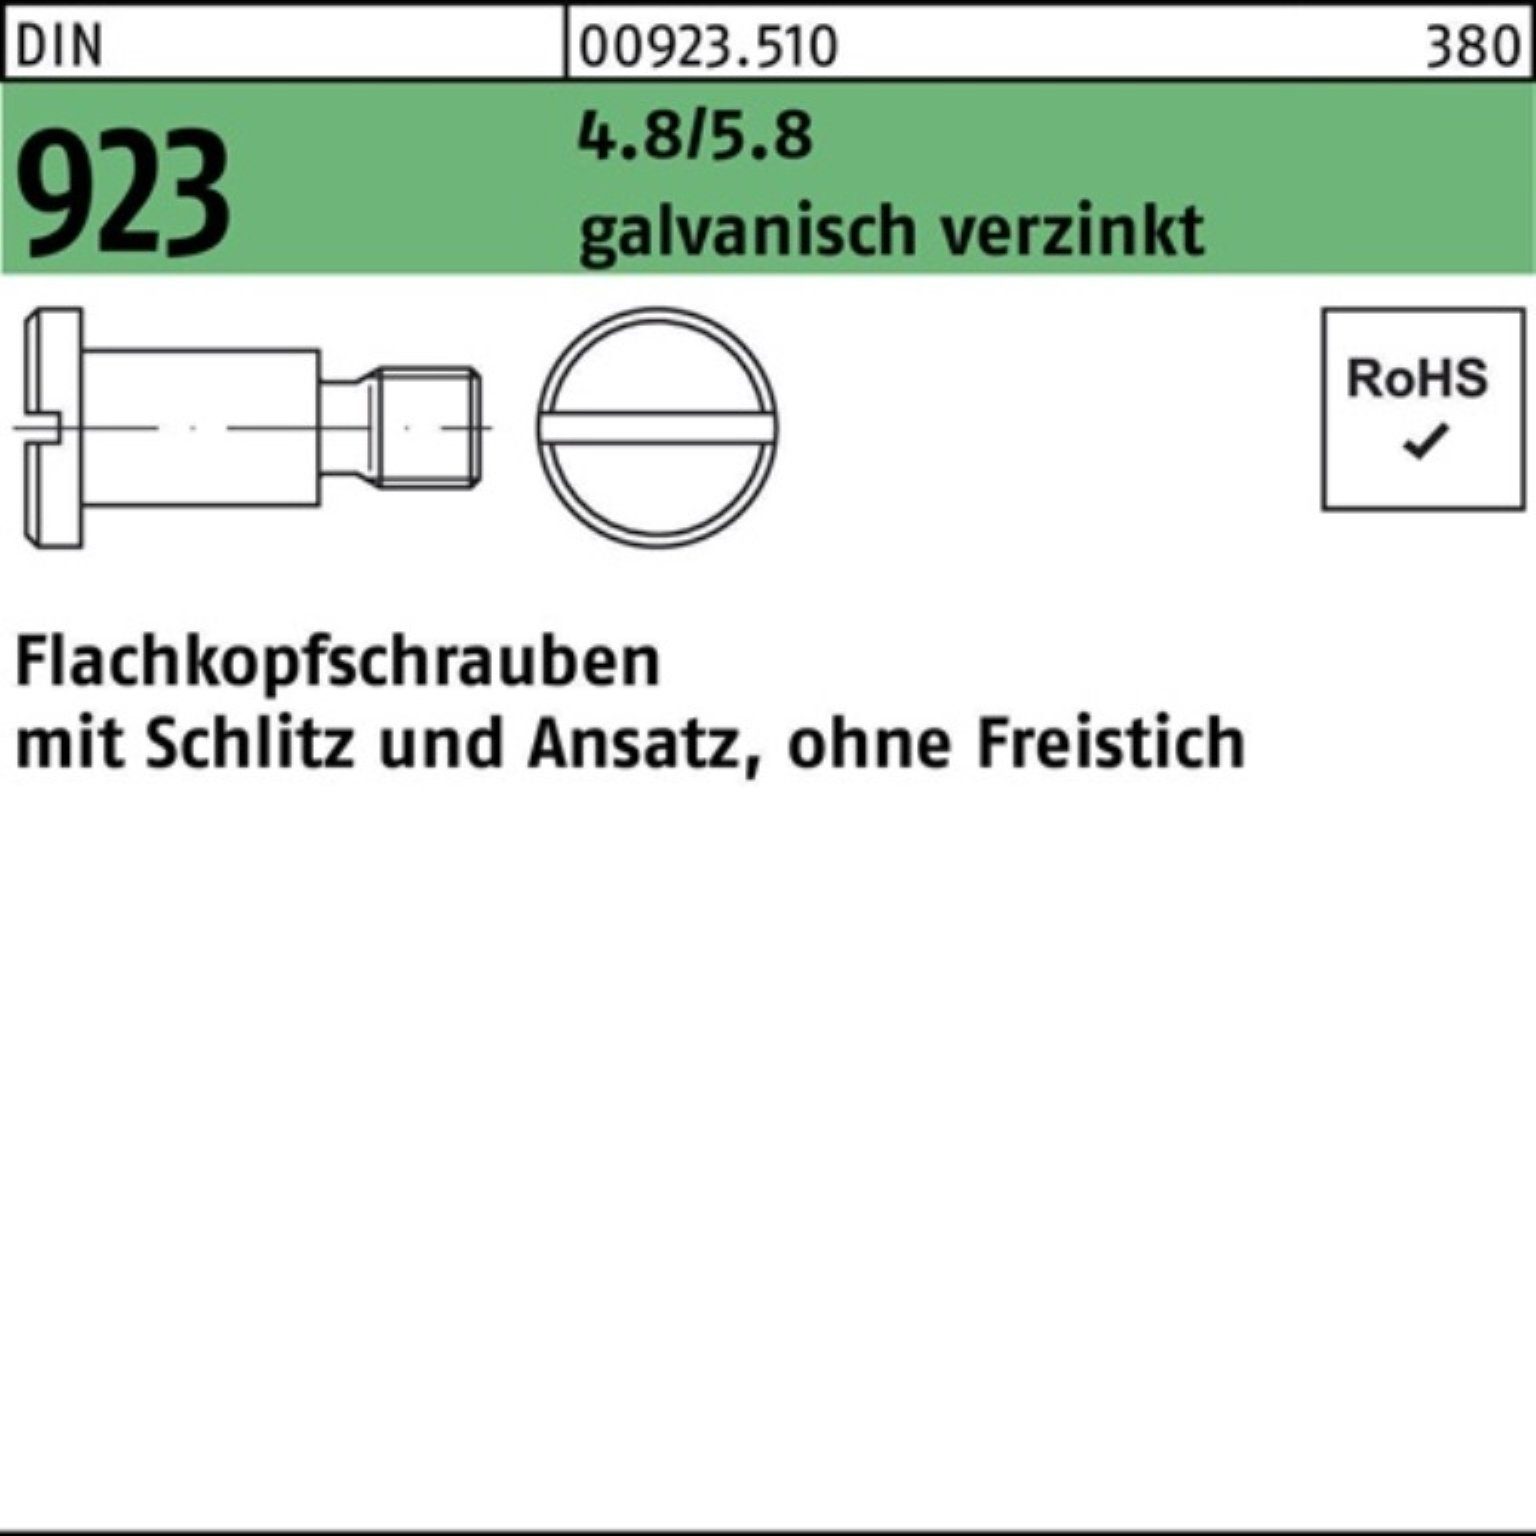 923 DIN Schlitz/Ansatz M4x8x6,0 100er g Reyher Pack 4.8/5.8 Flachkopfschraube Schraube